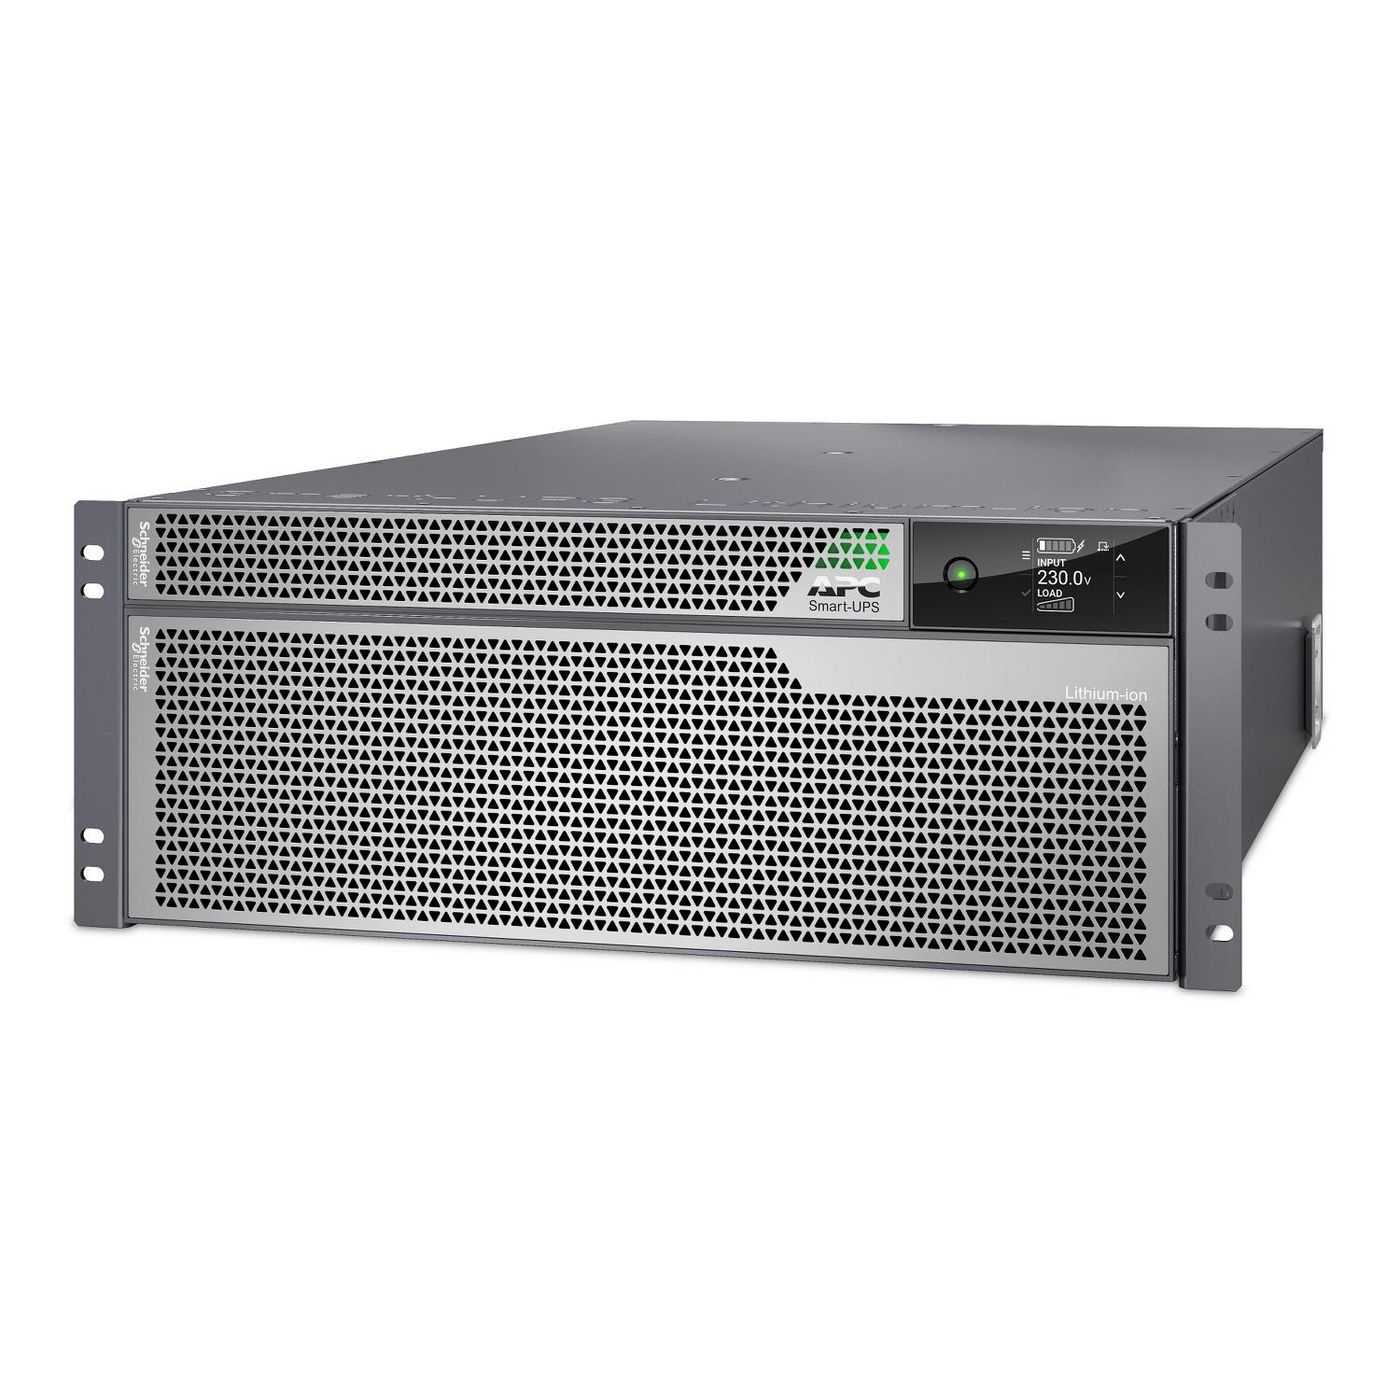 APC Smart-UPS Ultra On-Line Lithium ion 8KVA/8KW 4U Rack/Tower 230V